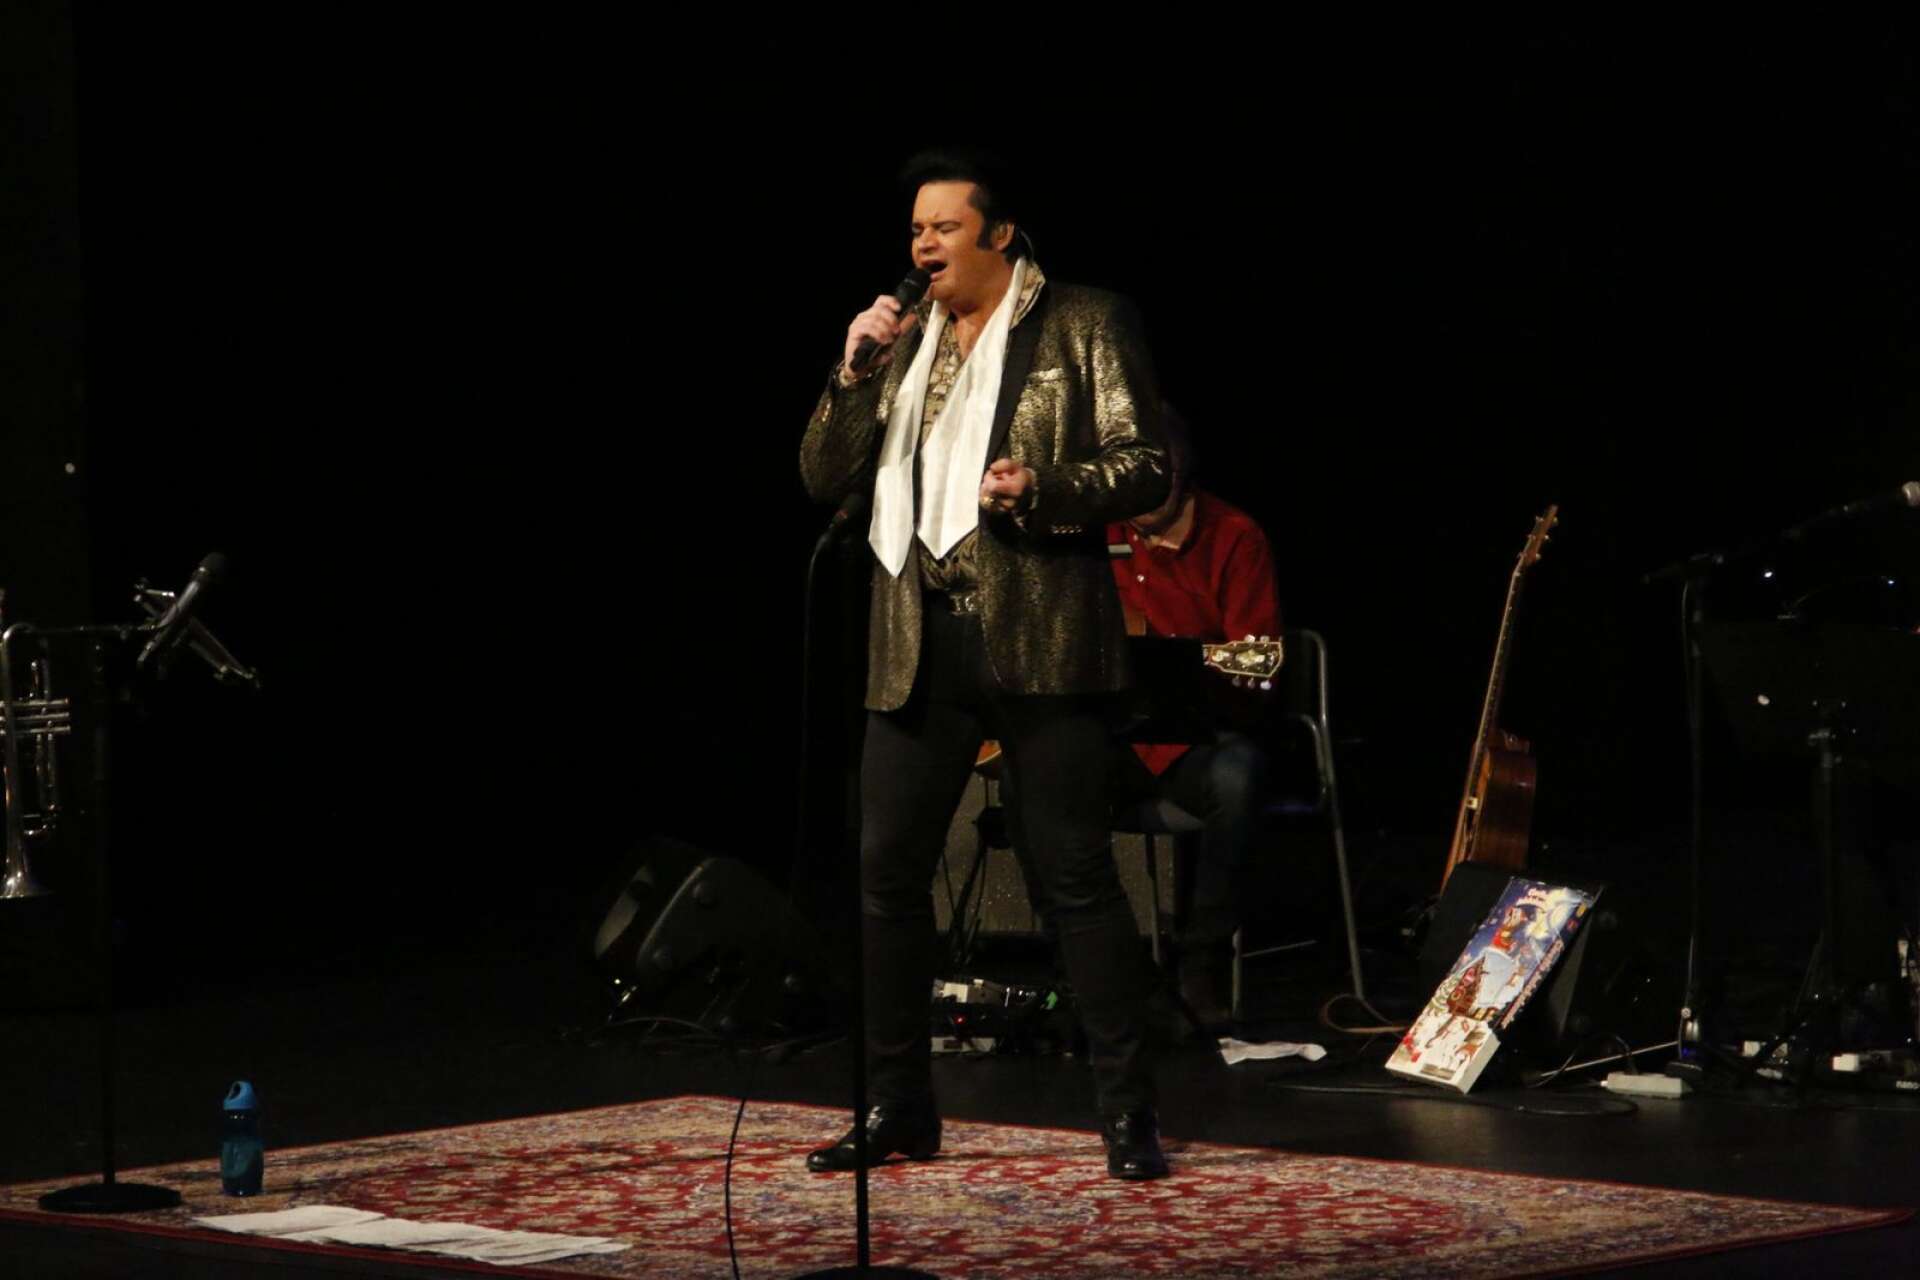 ”Elvis” i klassiska scenkläder sjunger en av kvällens låtar.